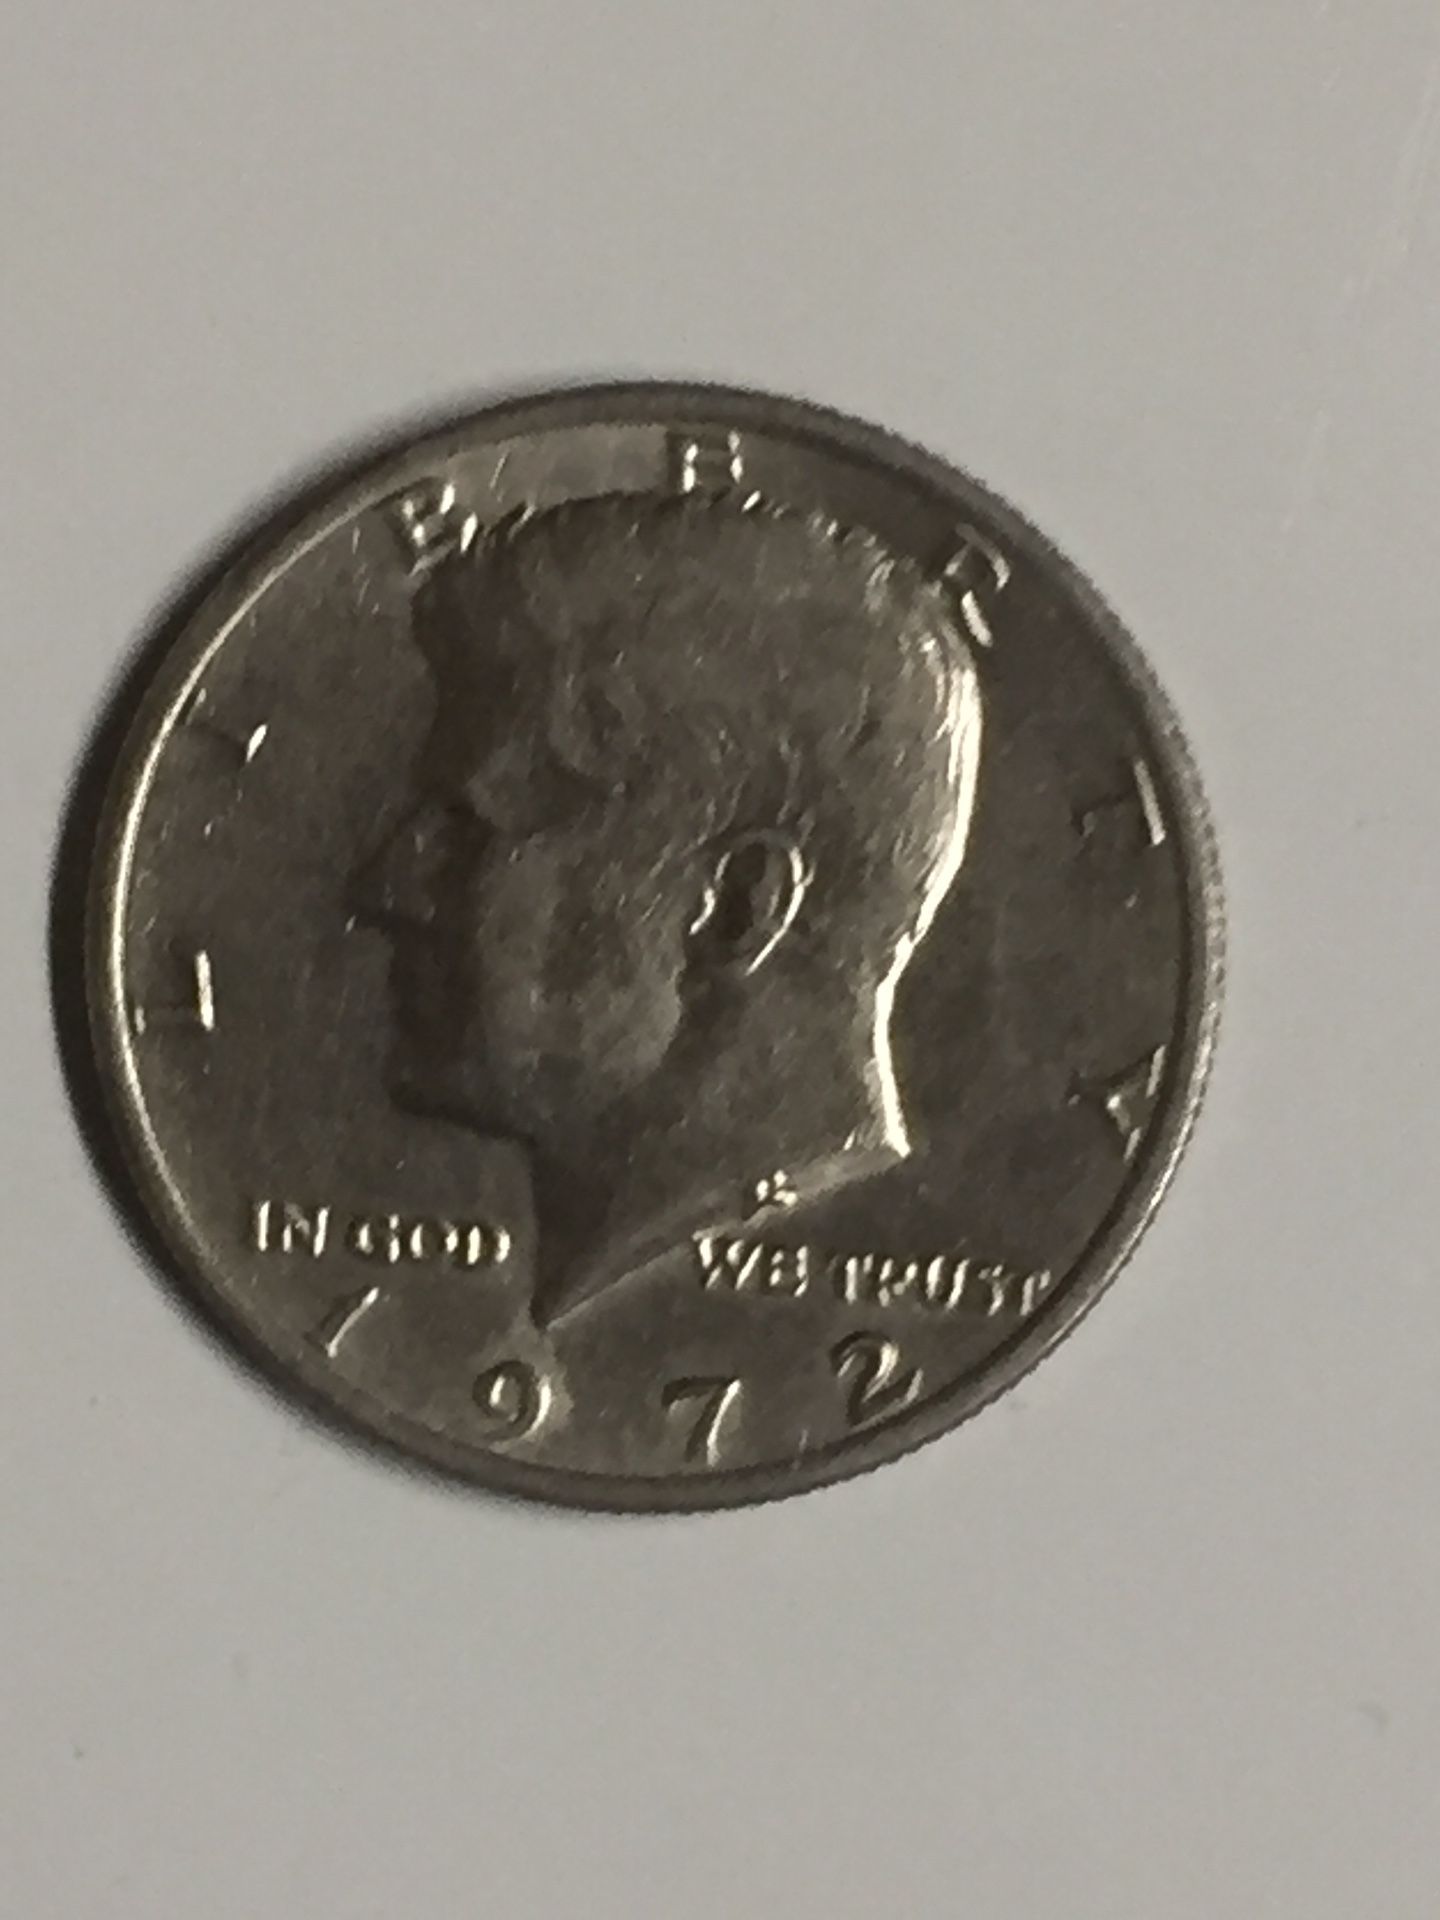 1972 US half dollar